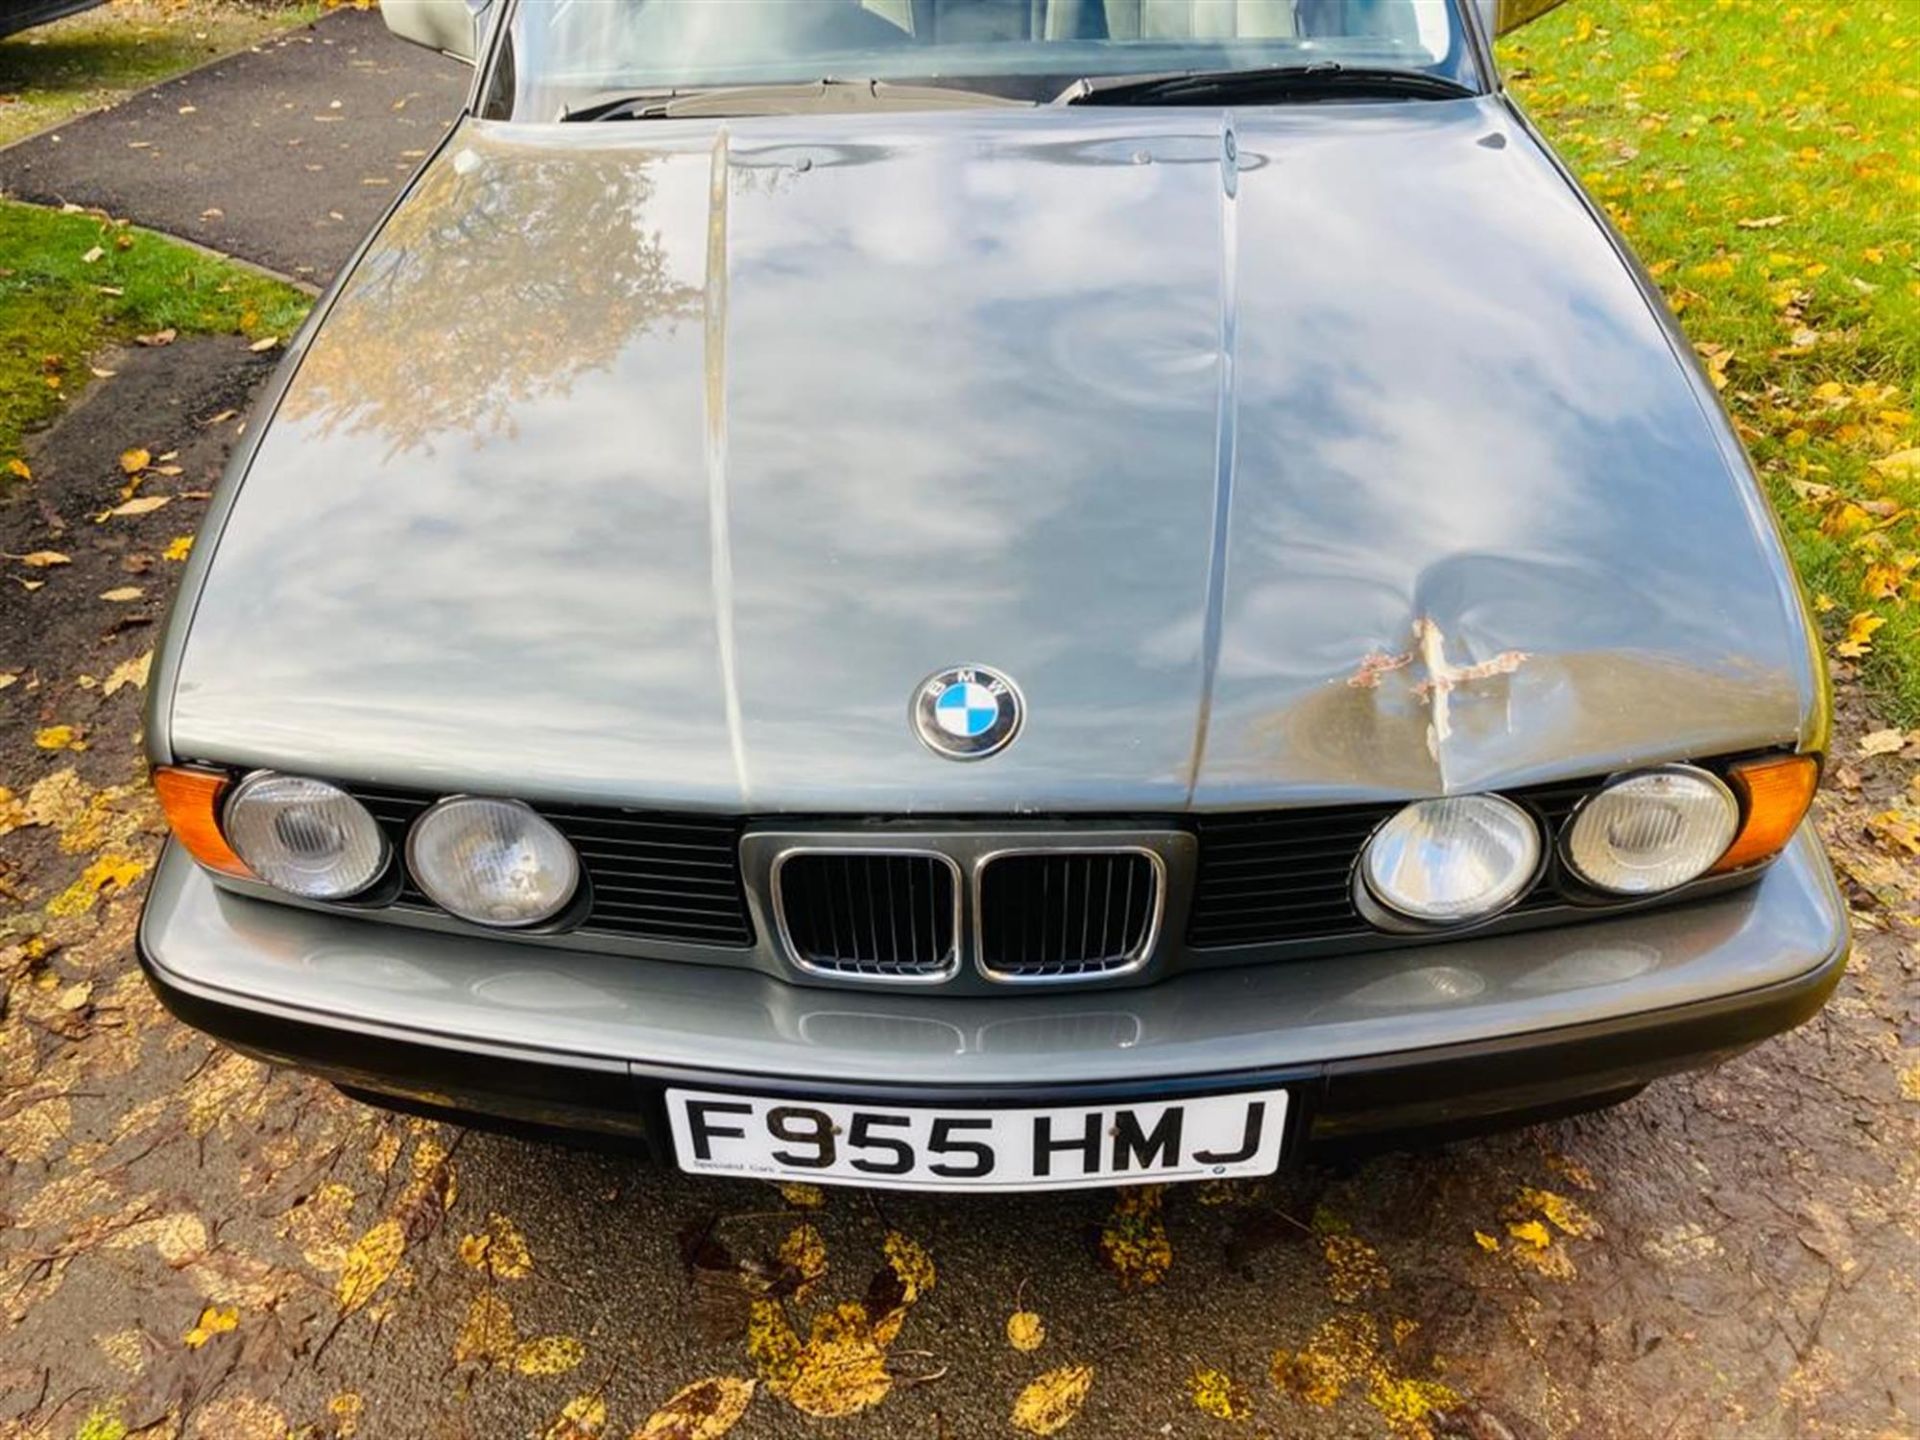 1988 BMW 535i (E34) - Image 6 of 10